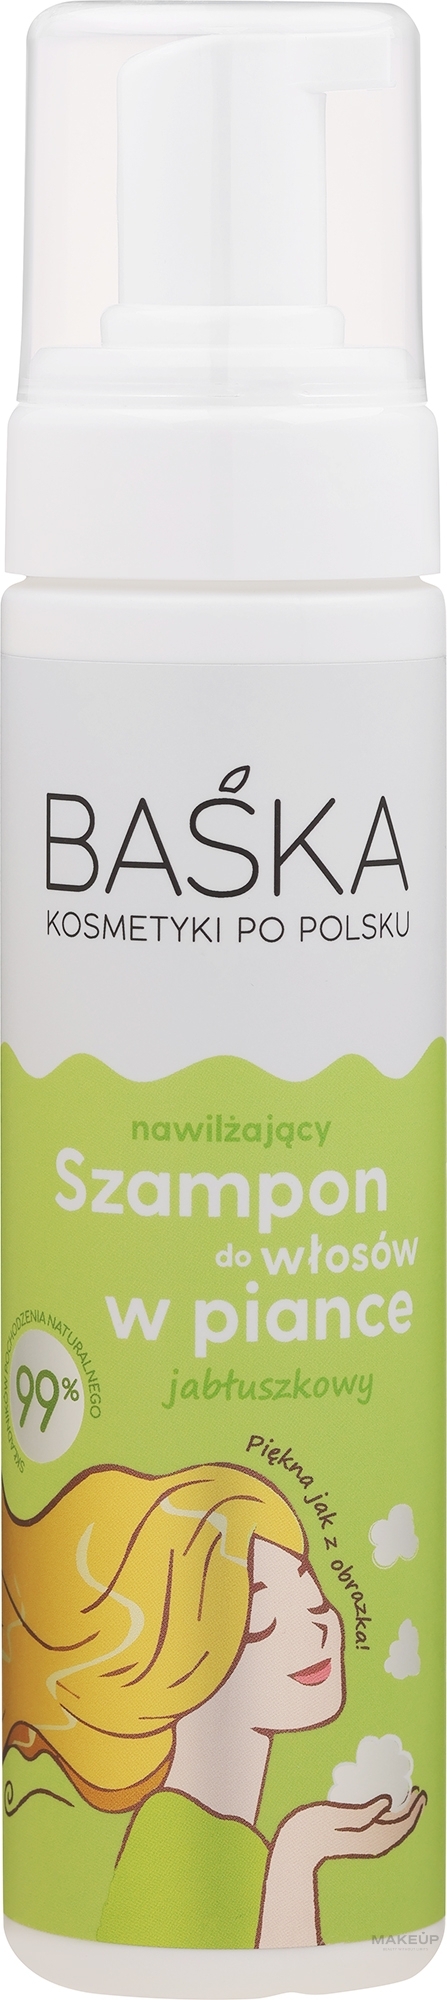 Jabłuszkowy szampon nawilżający do włosów w piance - Baska  — Zdjęcie 200 ml